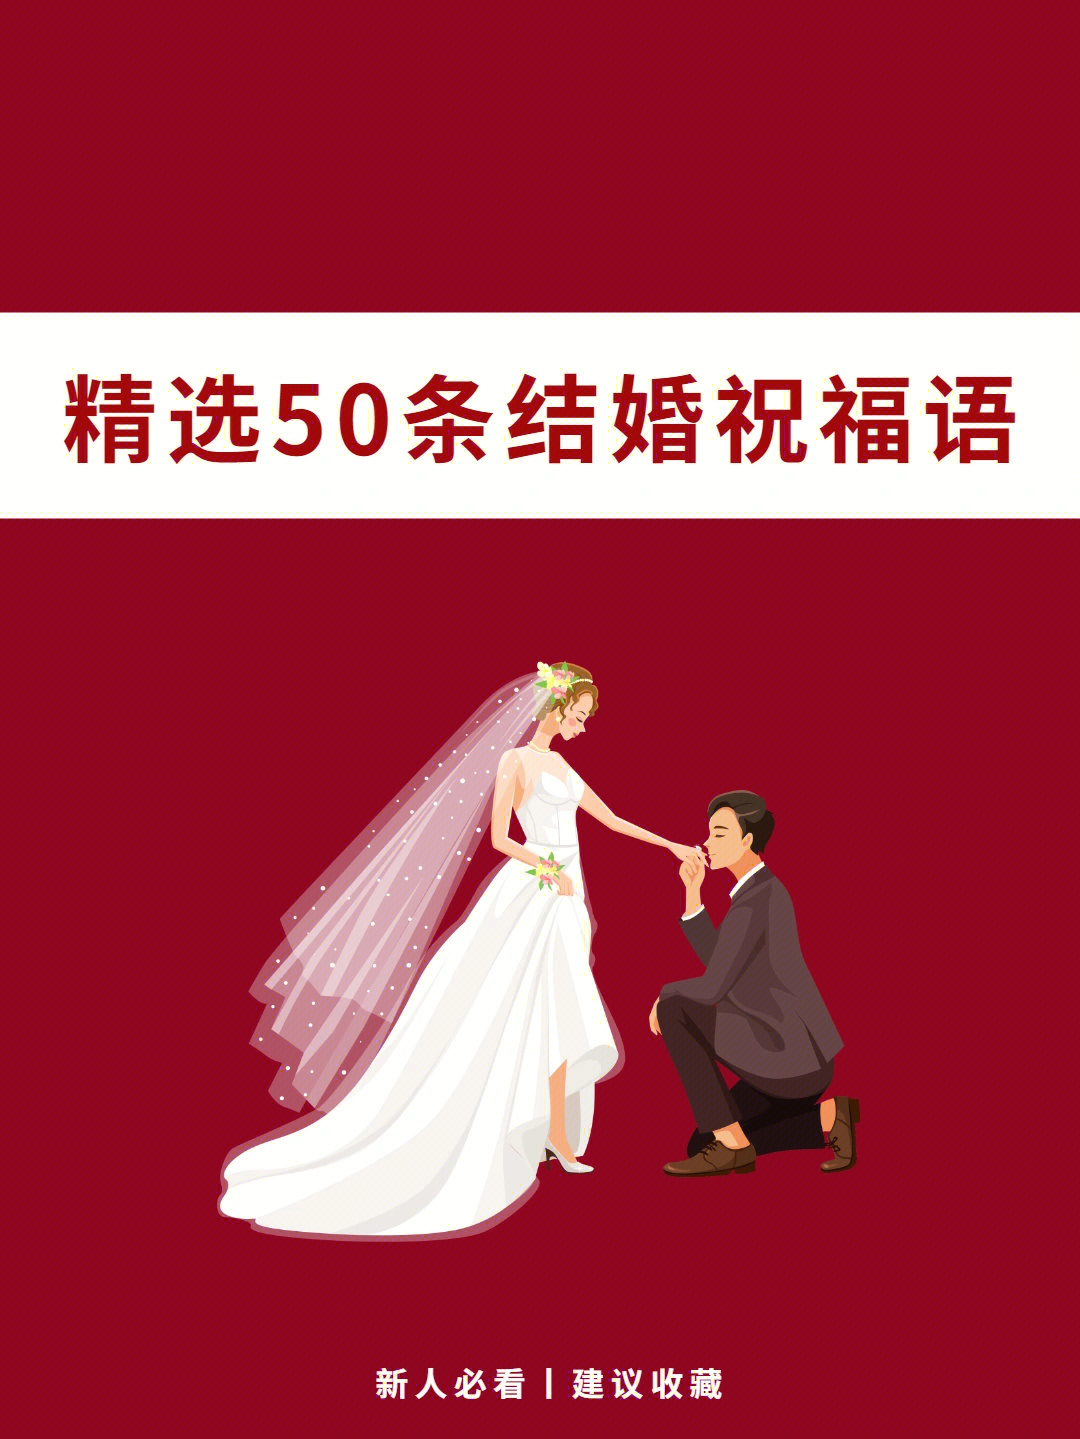 精选50条结婚祝福语不再干篇一律说恭喜